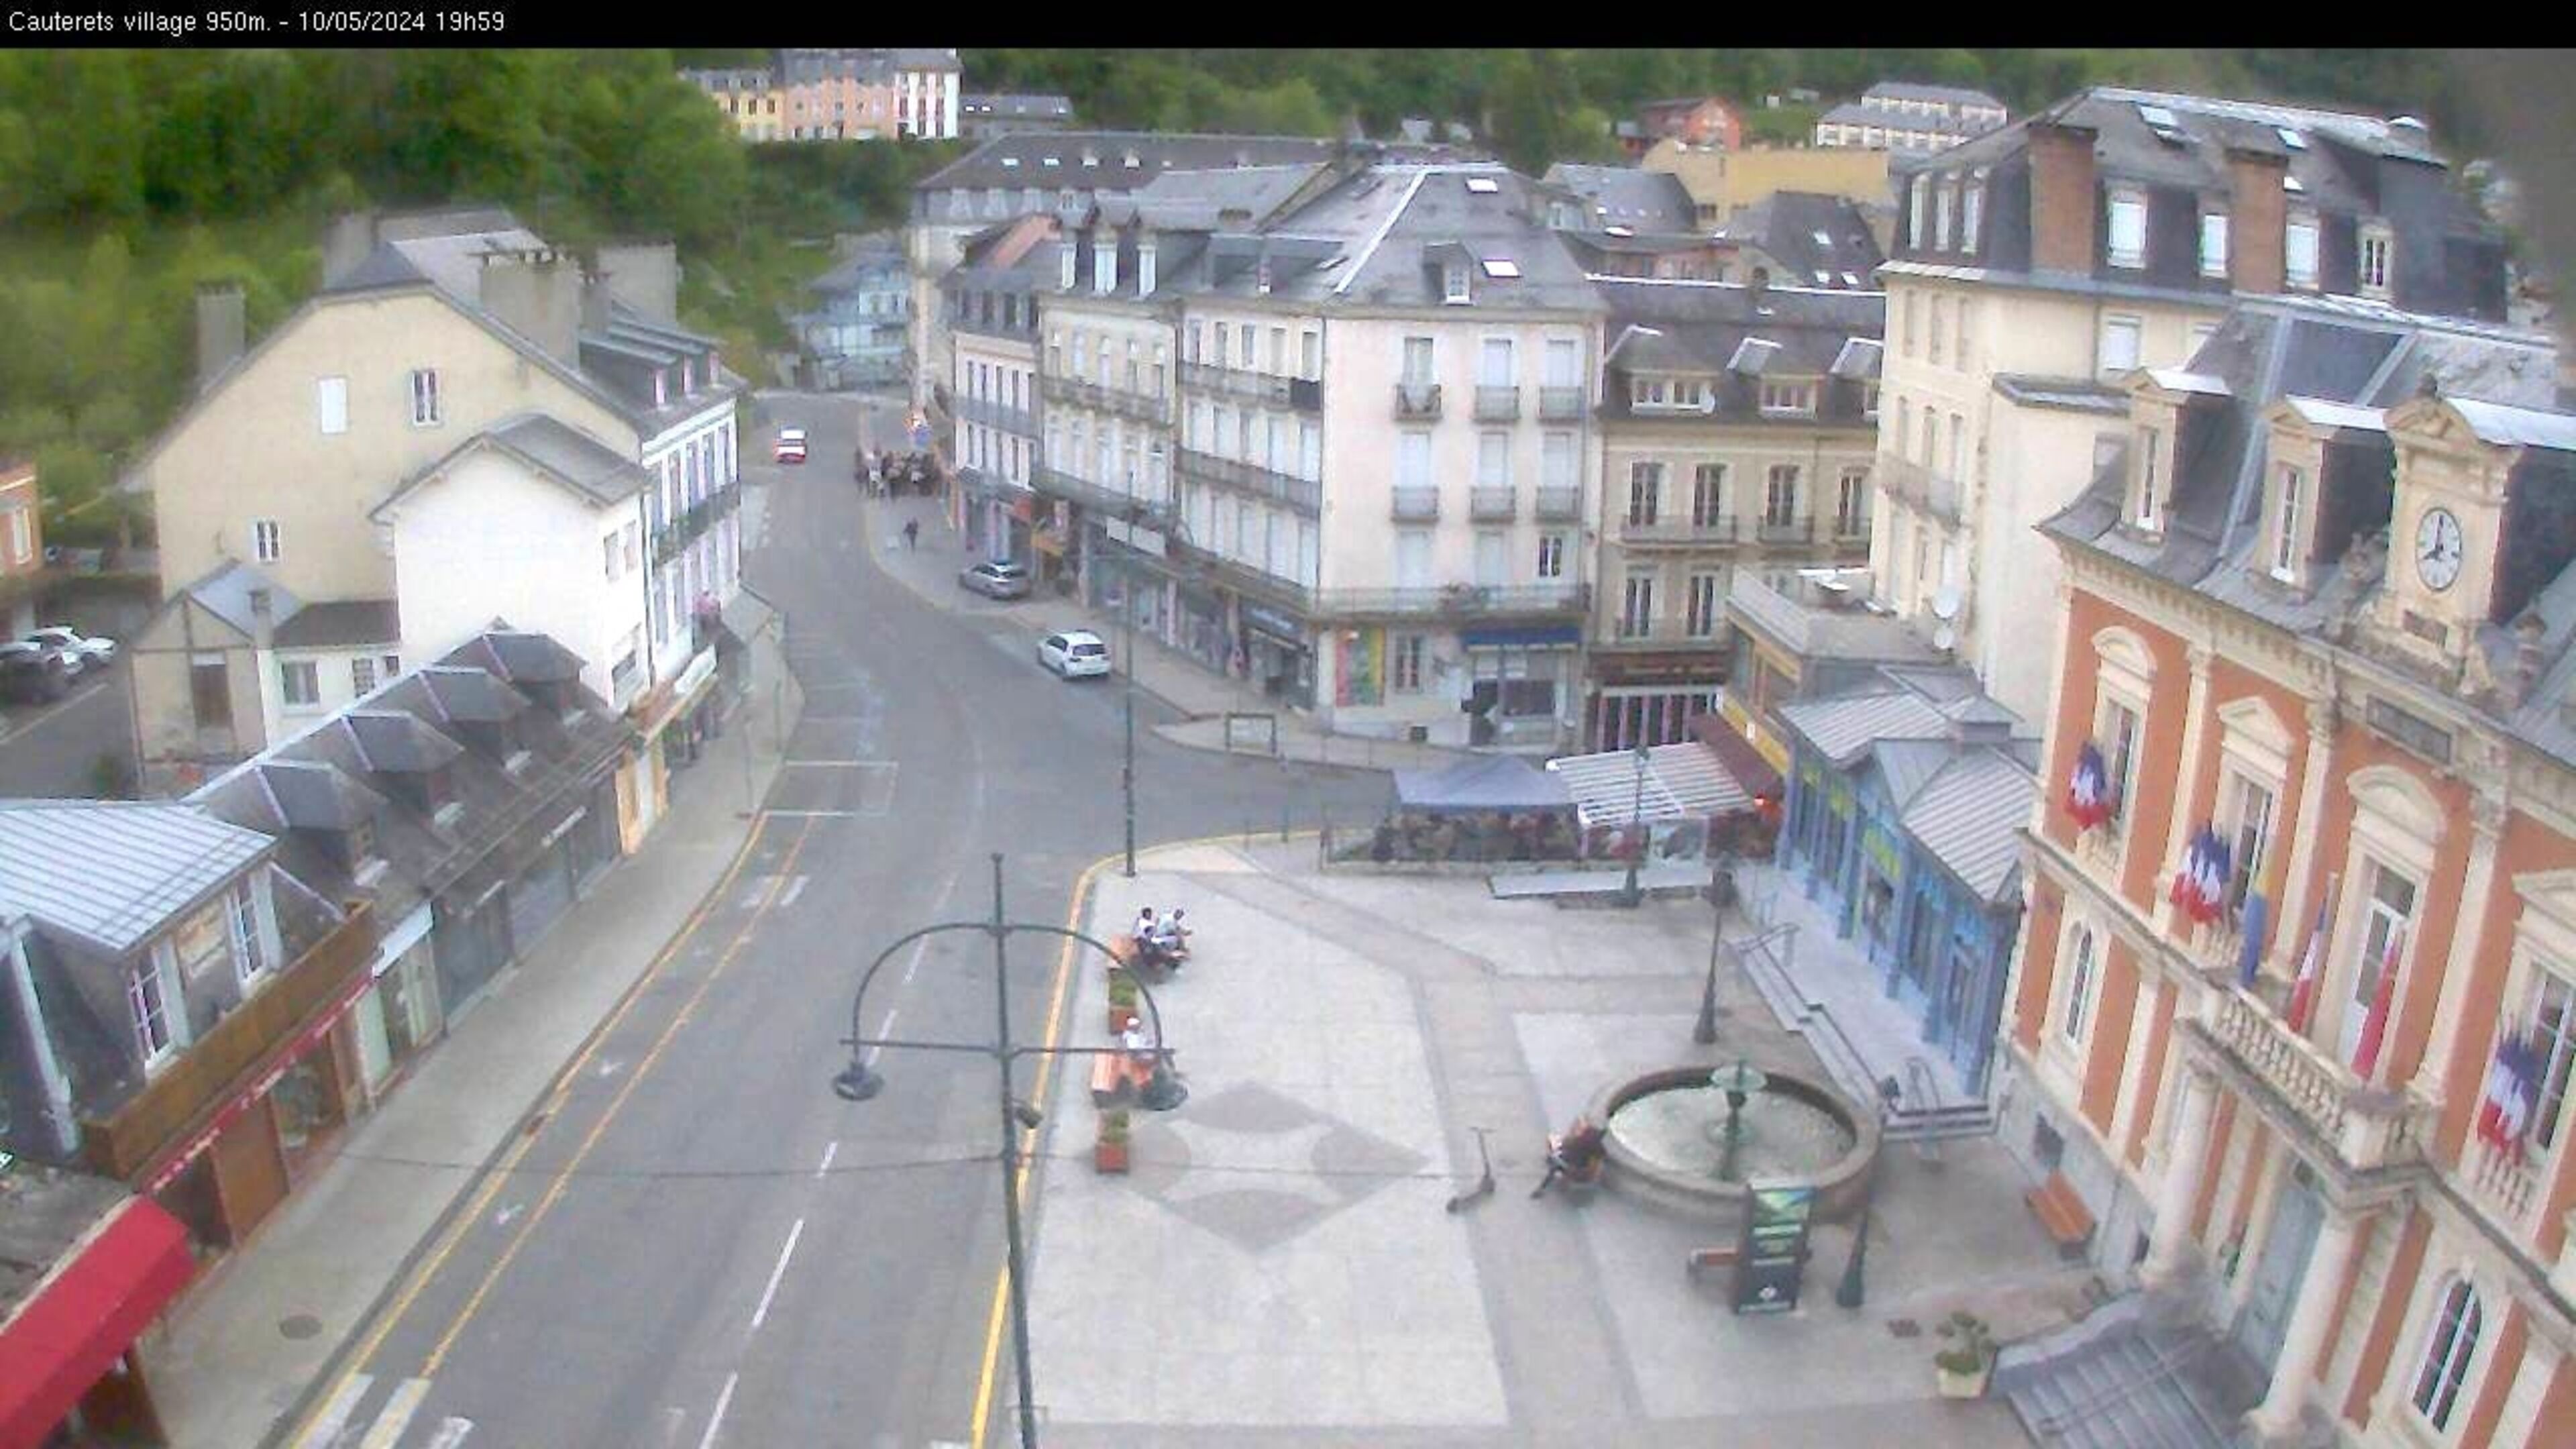 <h2>Webcam dans le village de Cauterets à 945 mètres d'altitude dans les Pyrénées. Vue sur la D920</h2>